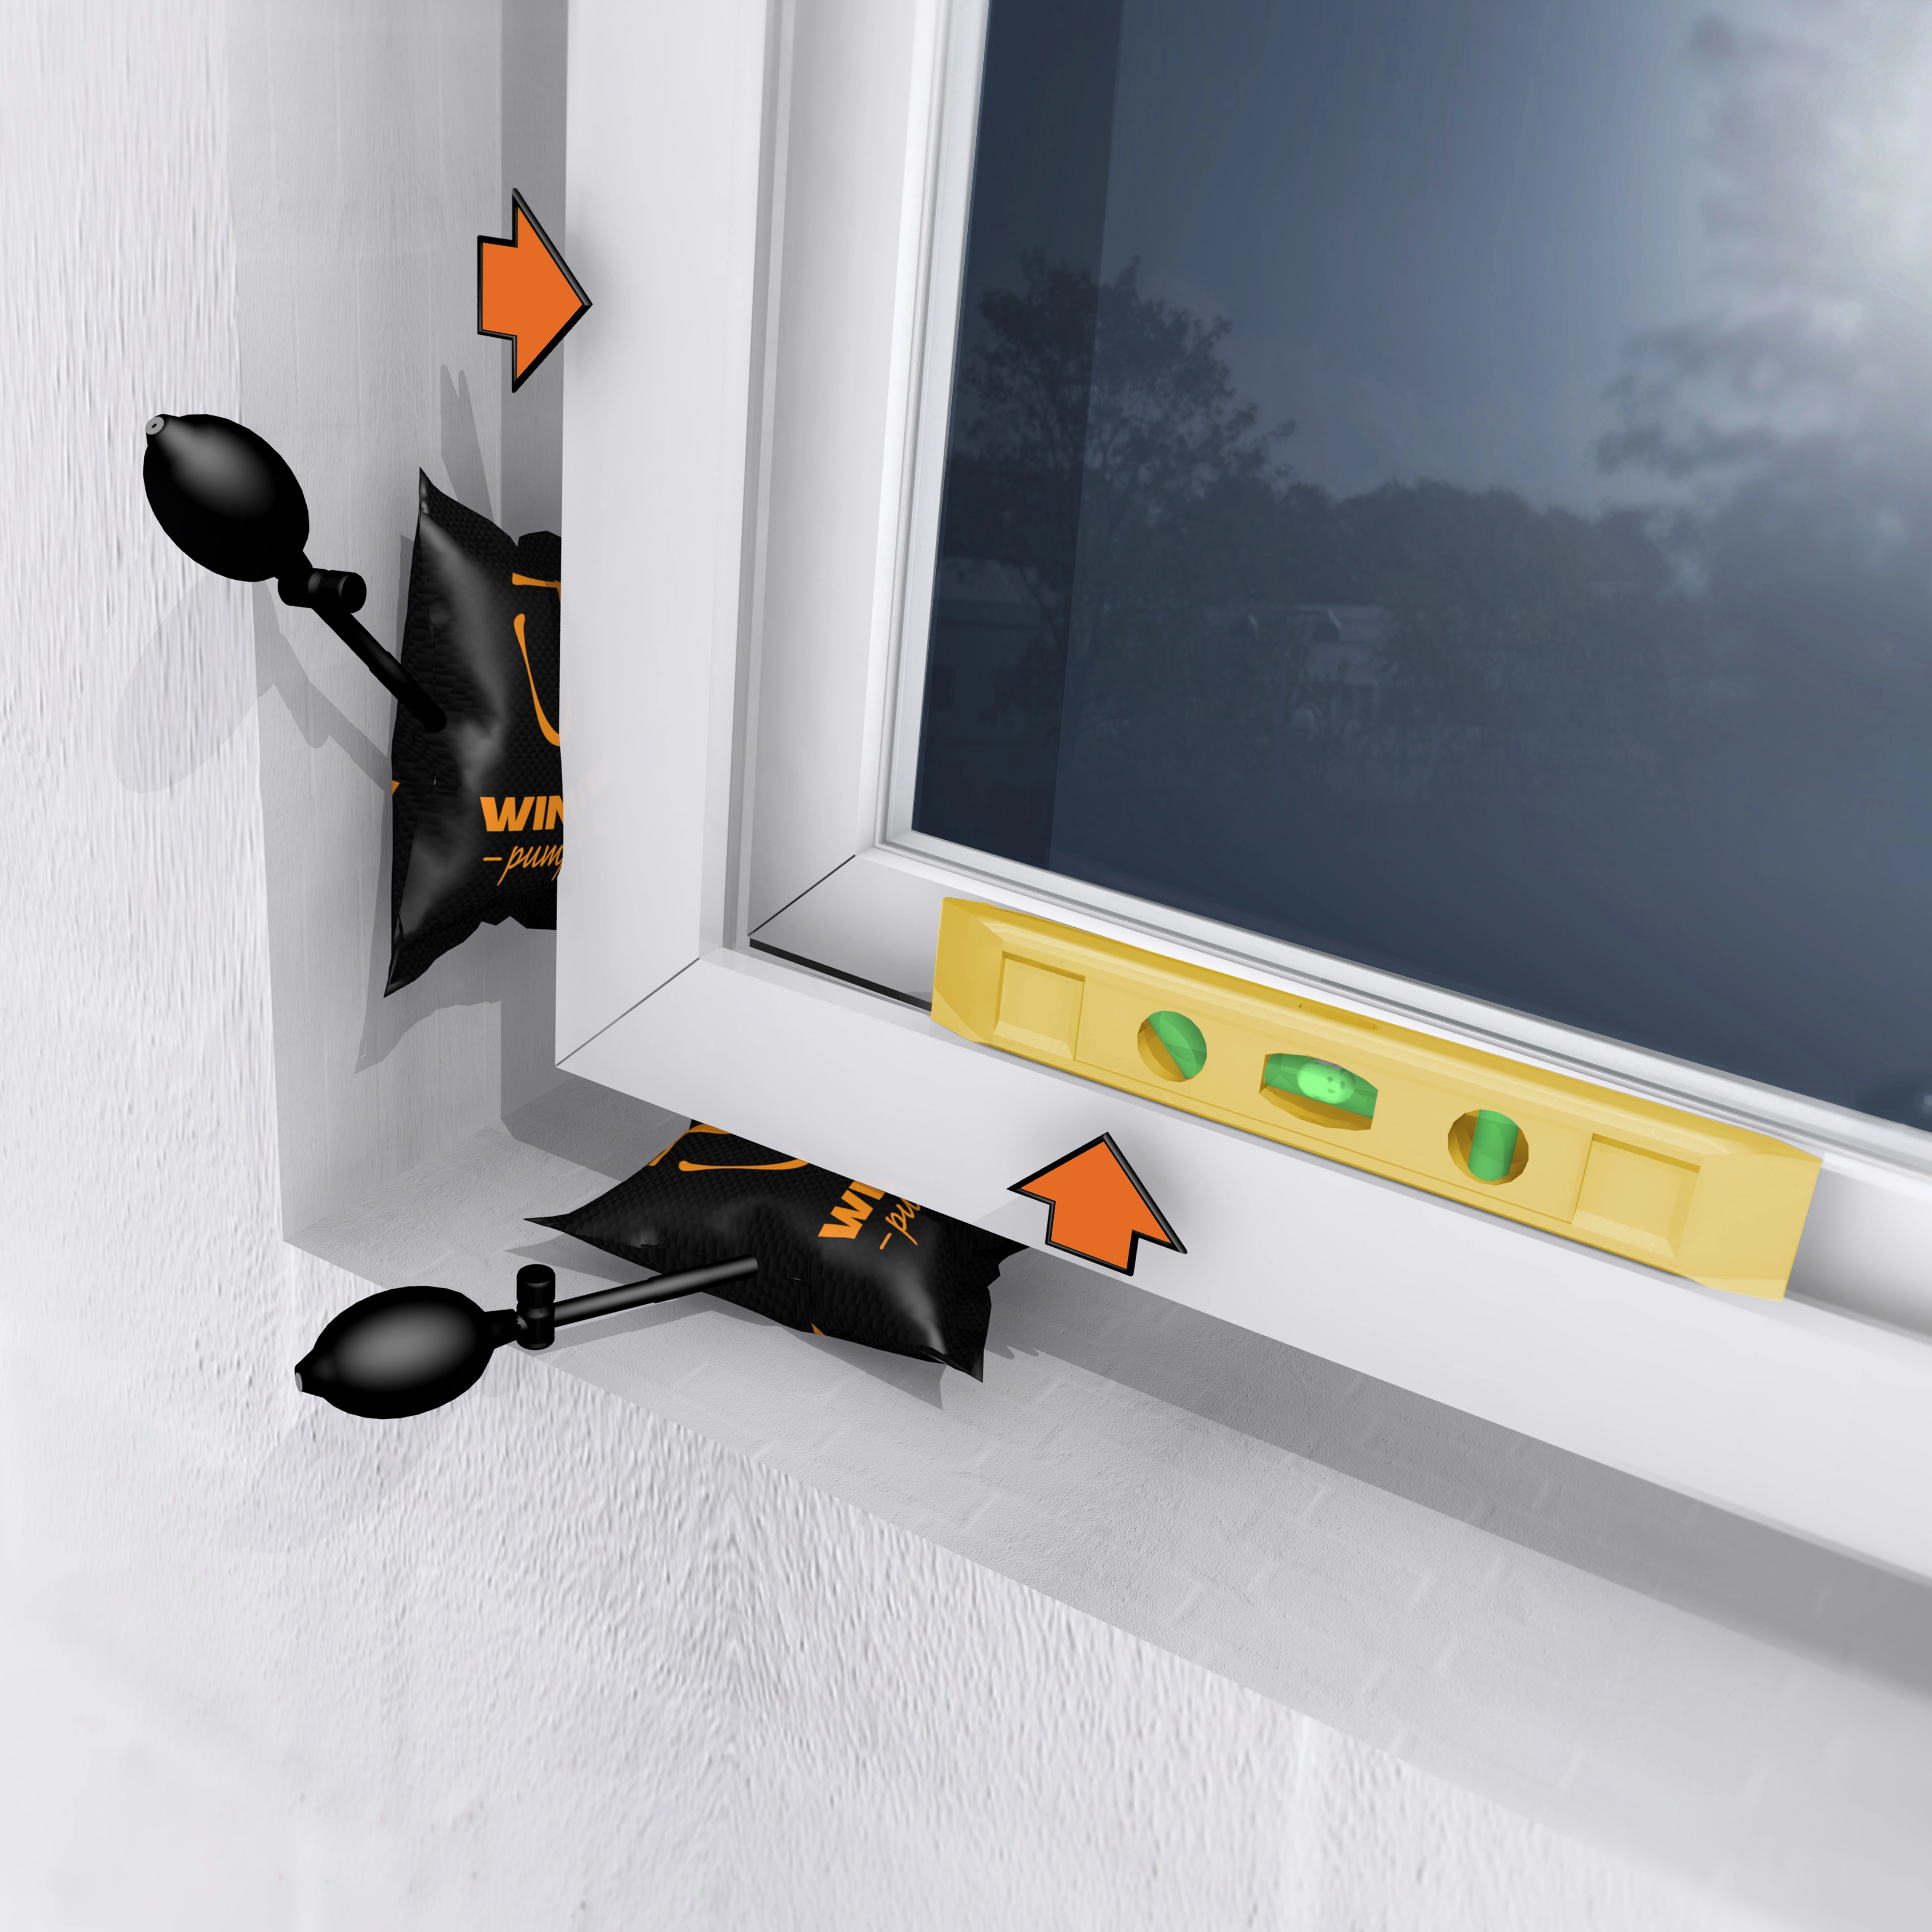 4 x Winbag Montage Luftkissen Fenster Türen/ Pump-Up Air Wedge for  Door/Window